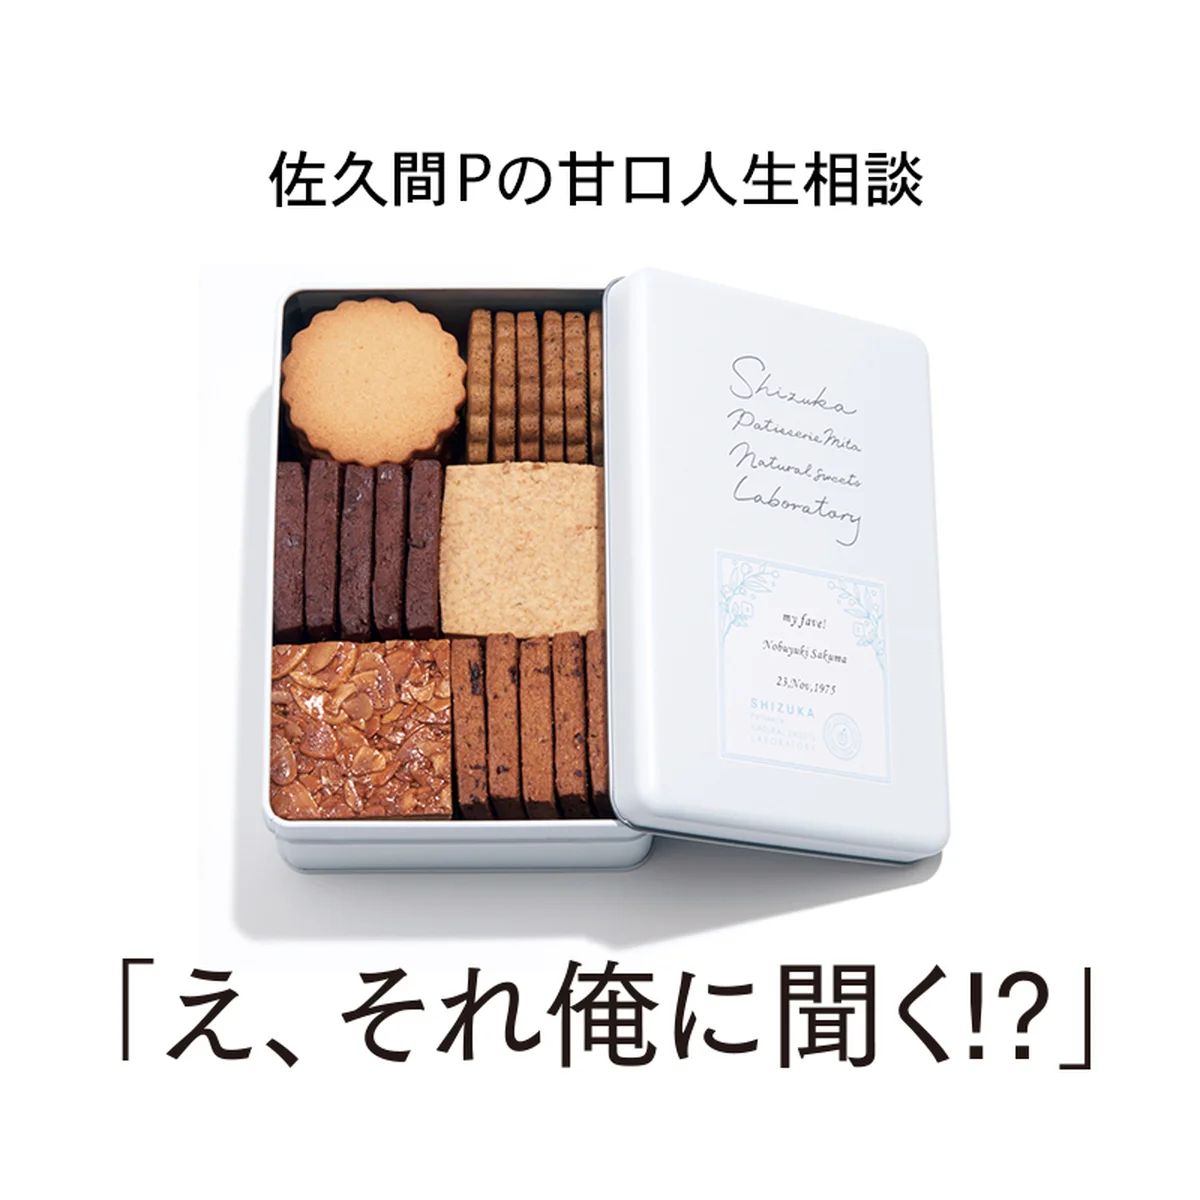 今月のスイーツ：「シヅカ洋菓子店 自然菓子研究所のNo.1 Shizuka Biscuit」【佐久間Pの甘口人生相談「え、それ俺に聞く⁉︎」】